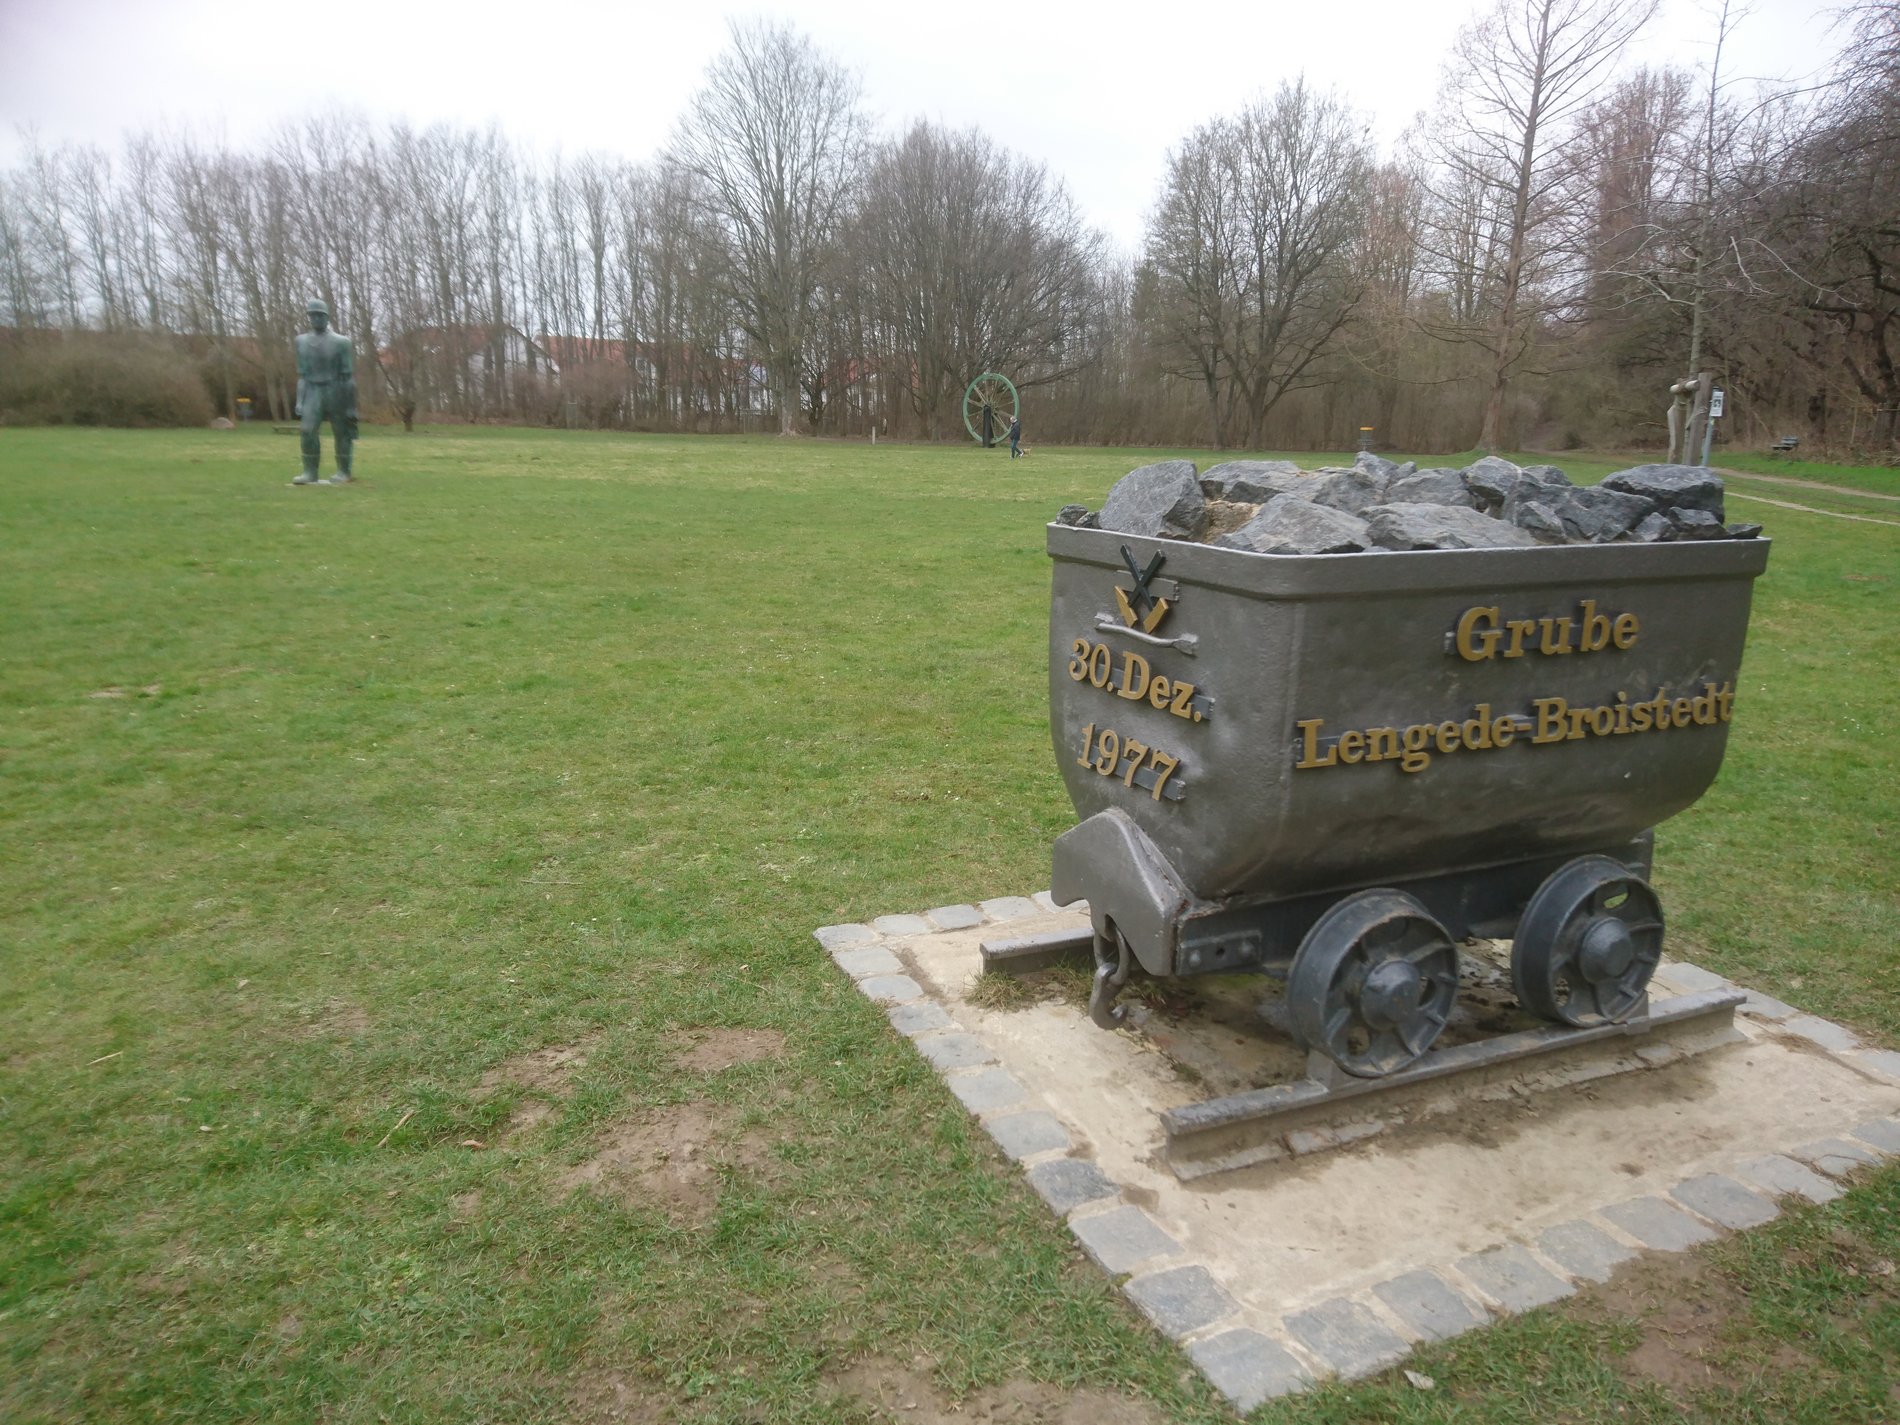 Man blickt auch die Bronzestatue einer Lore auf Schienen. Auf der Lore steht: "Grube Lengede-Broistedt" und "30. Dez. 1977". 